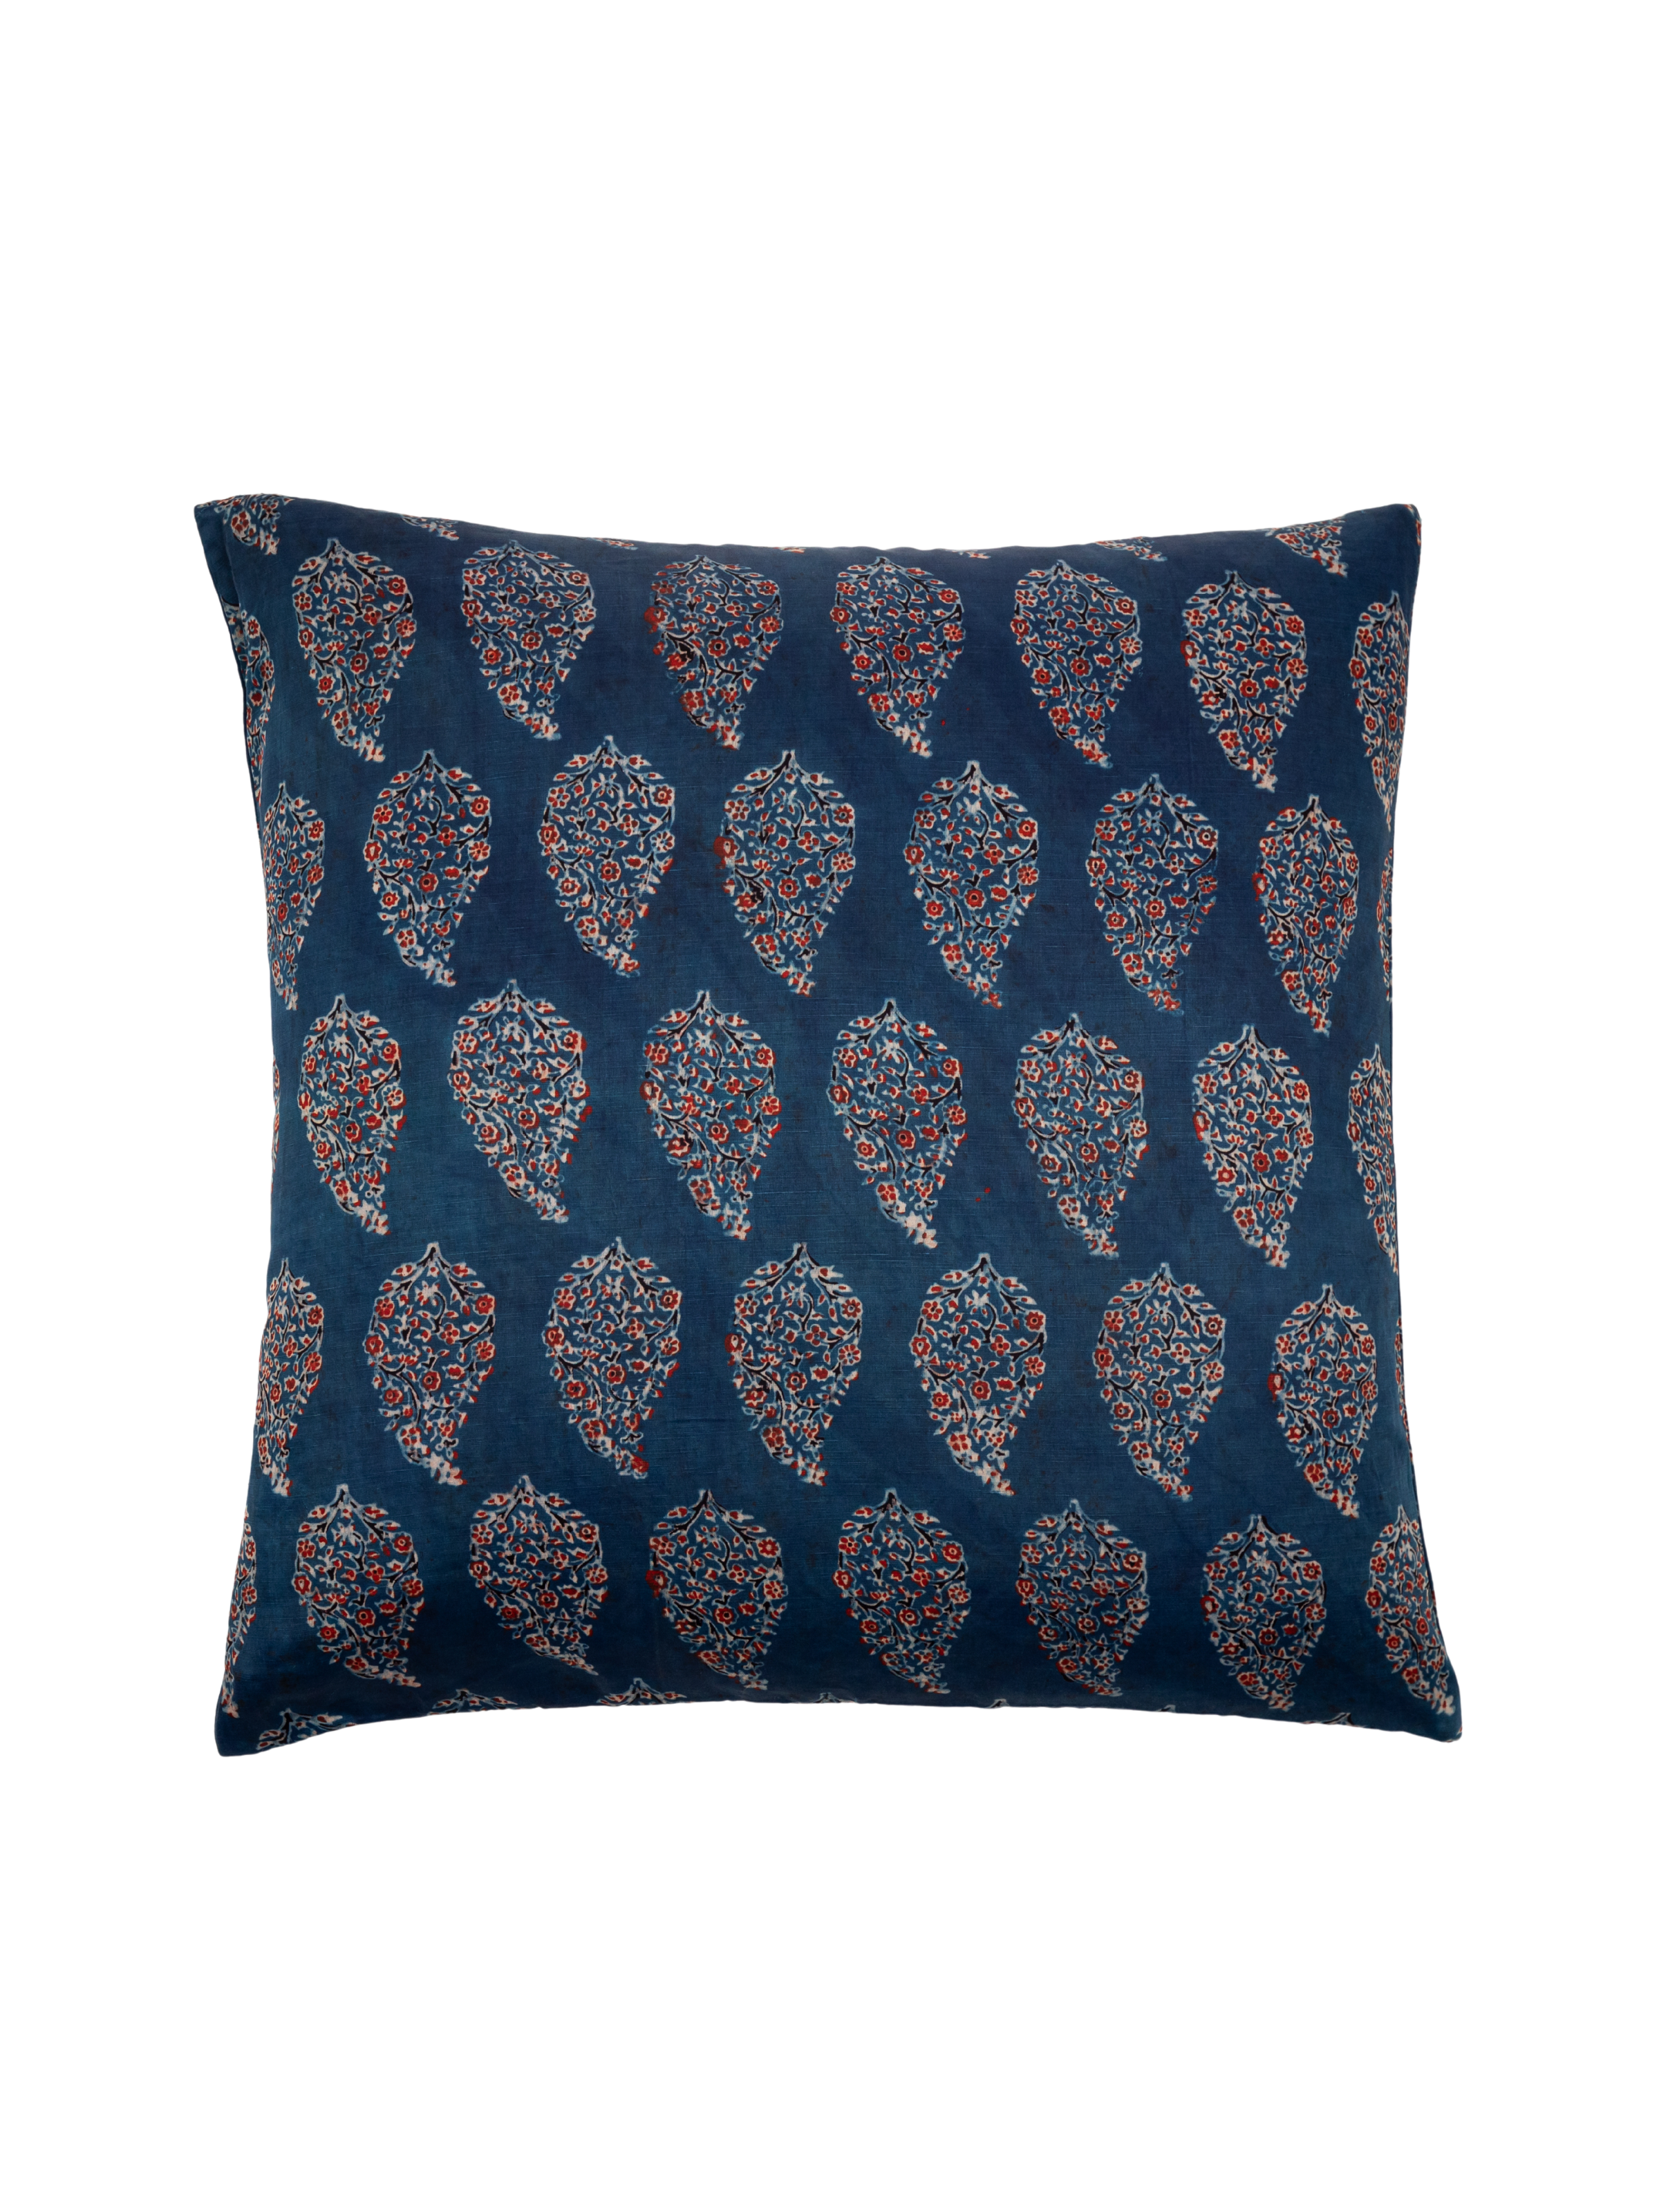 Saba Paisley Decorative Pillow